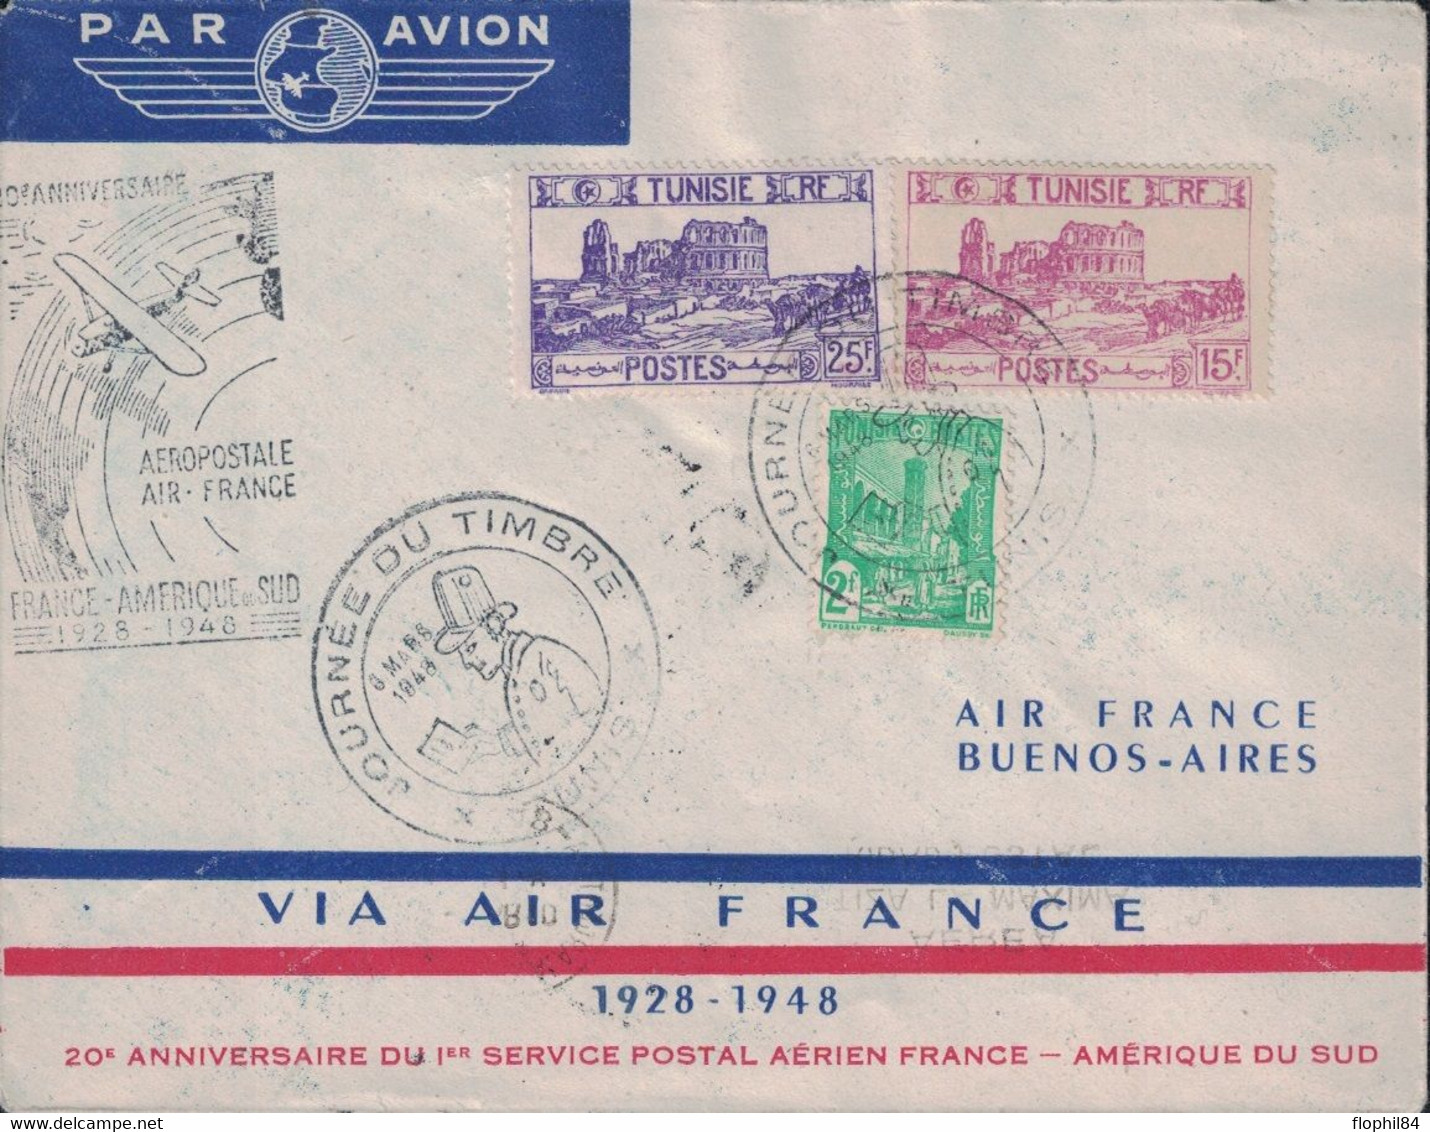 TUNISIE - TUNIS - ENVELOPPE AIR FRANCE - LIAISON FRANCE AMERIQUE DU SUD - 1929 EN 8 JOURS - 1948 EN 30 HEURES - CACHET S - Luchtpost